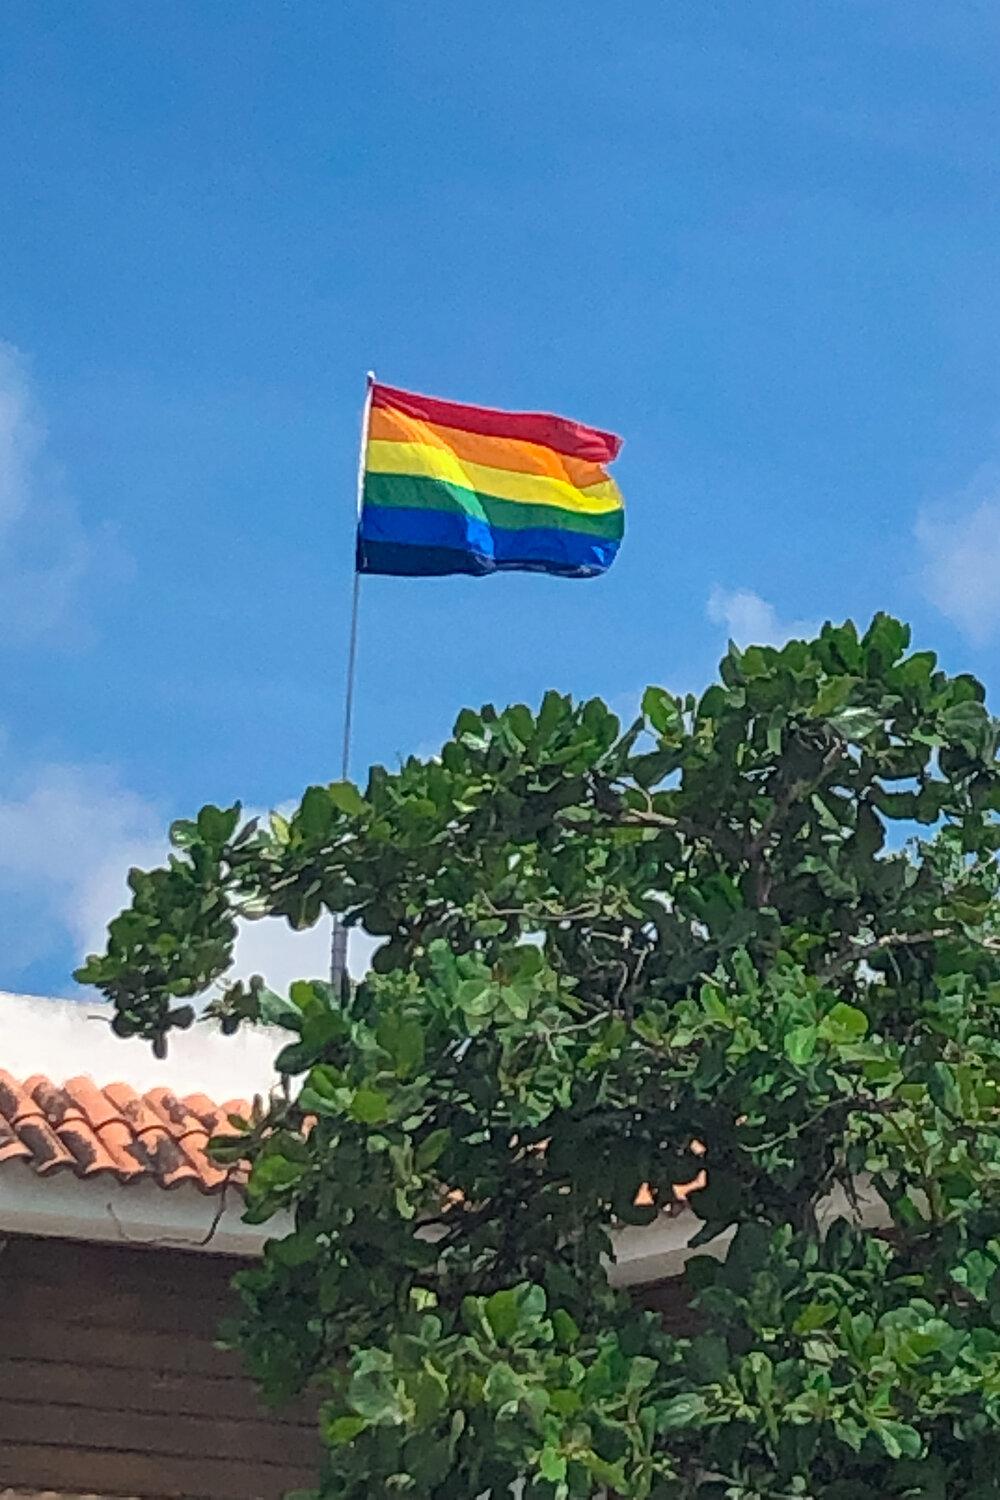 LesBiTravels-Queer-Travel-Honeymoon-Puerto-Rico-May-2019-11.jpg